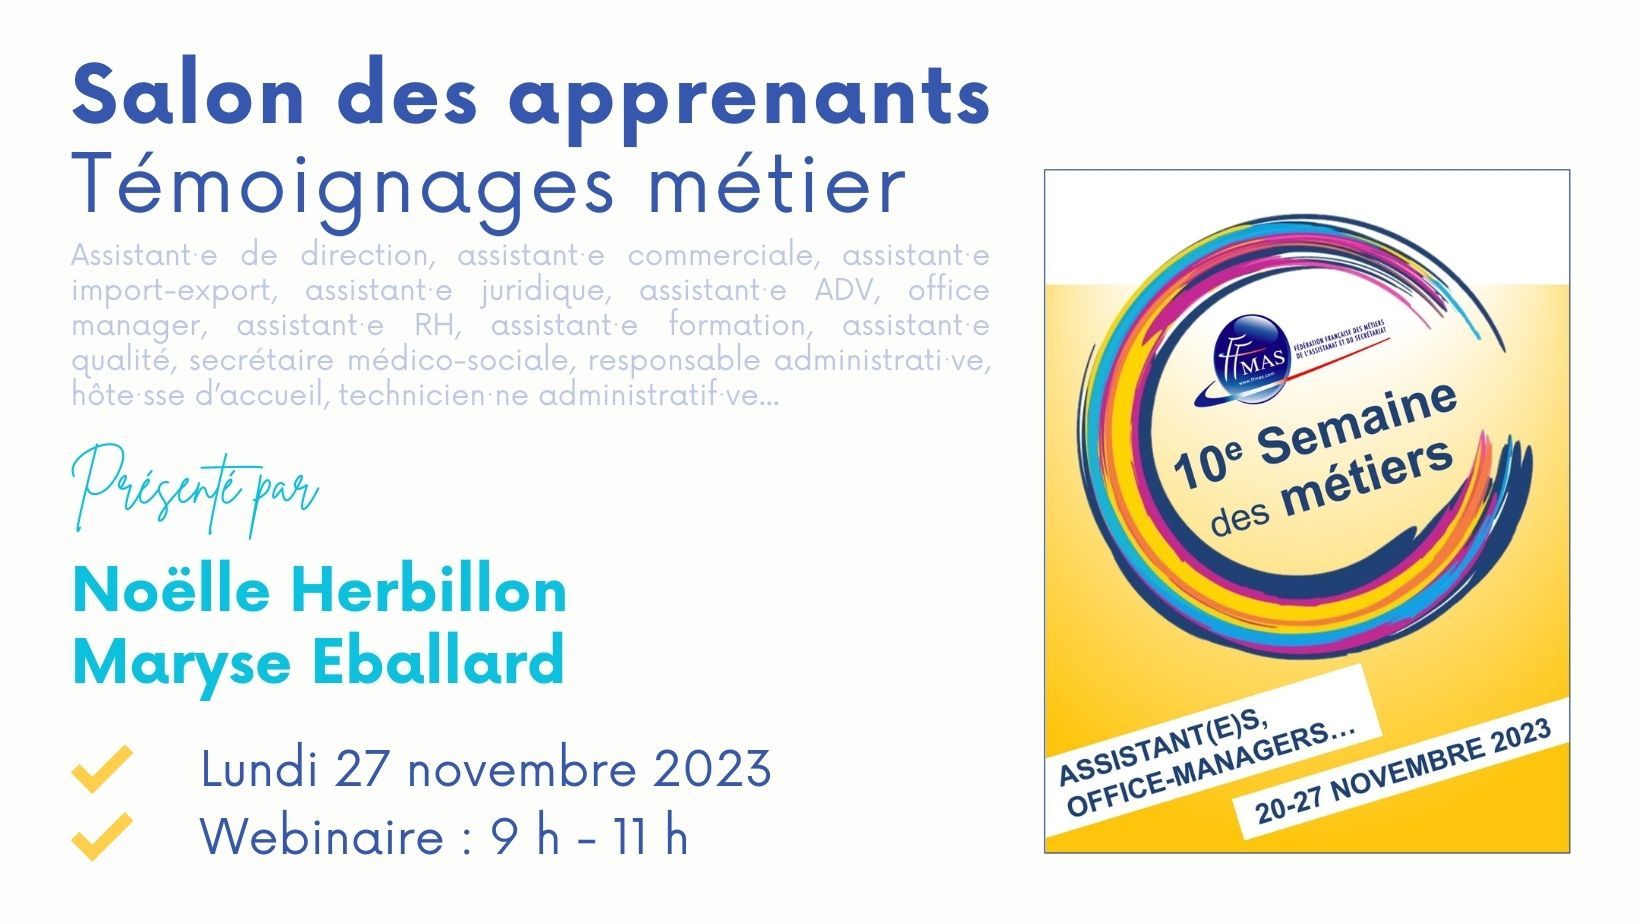 You are currently viewing Salon des apprenants – Témoignages métiers | Semaine des métiers 2023